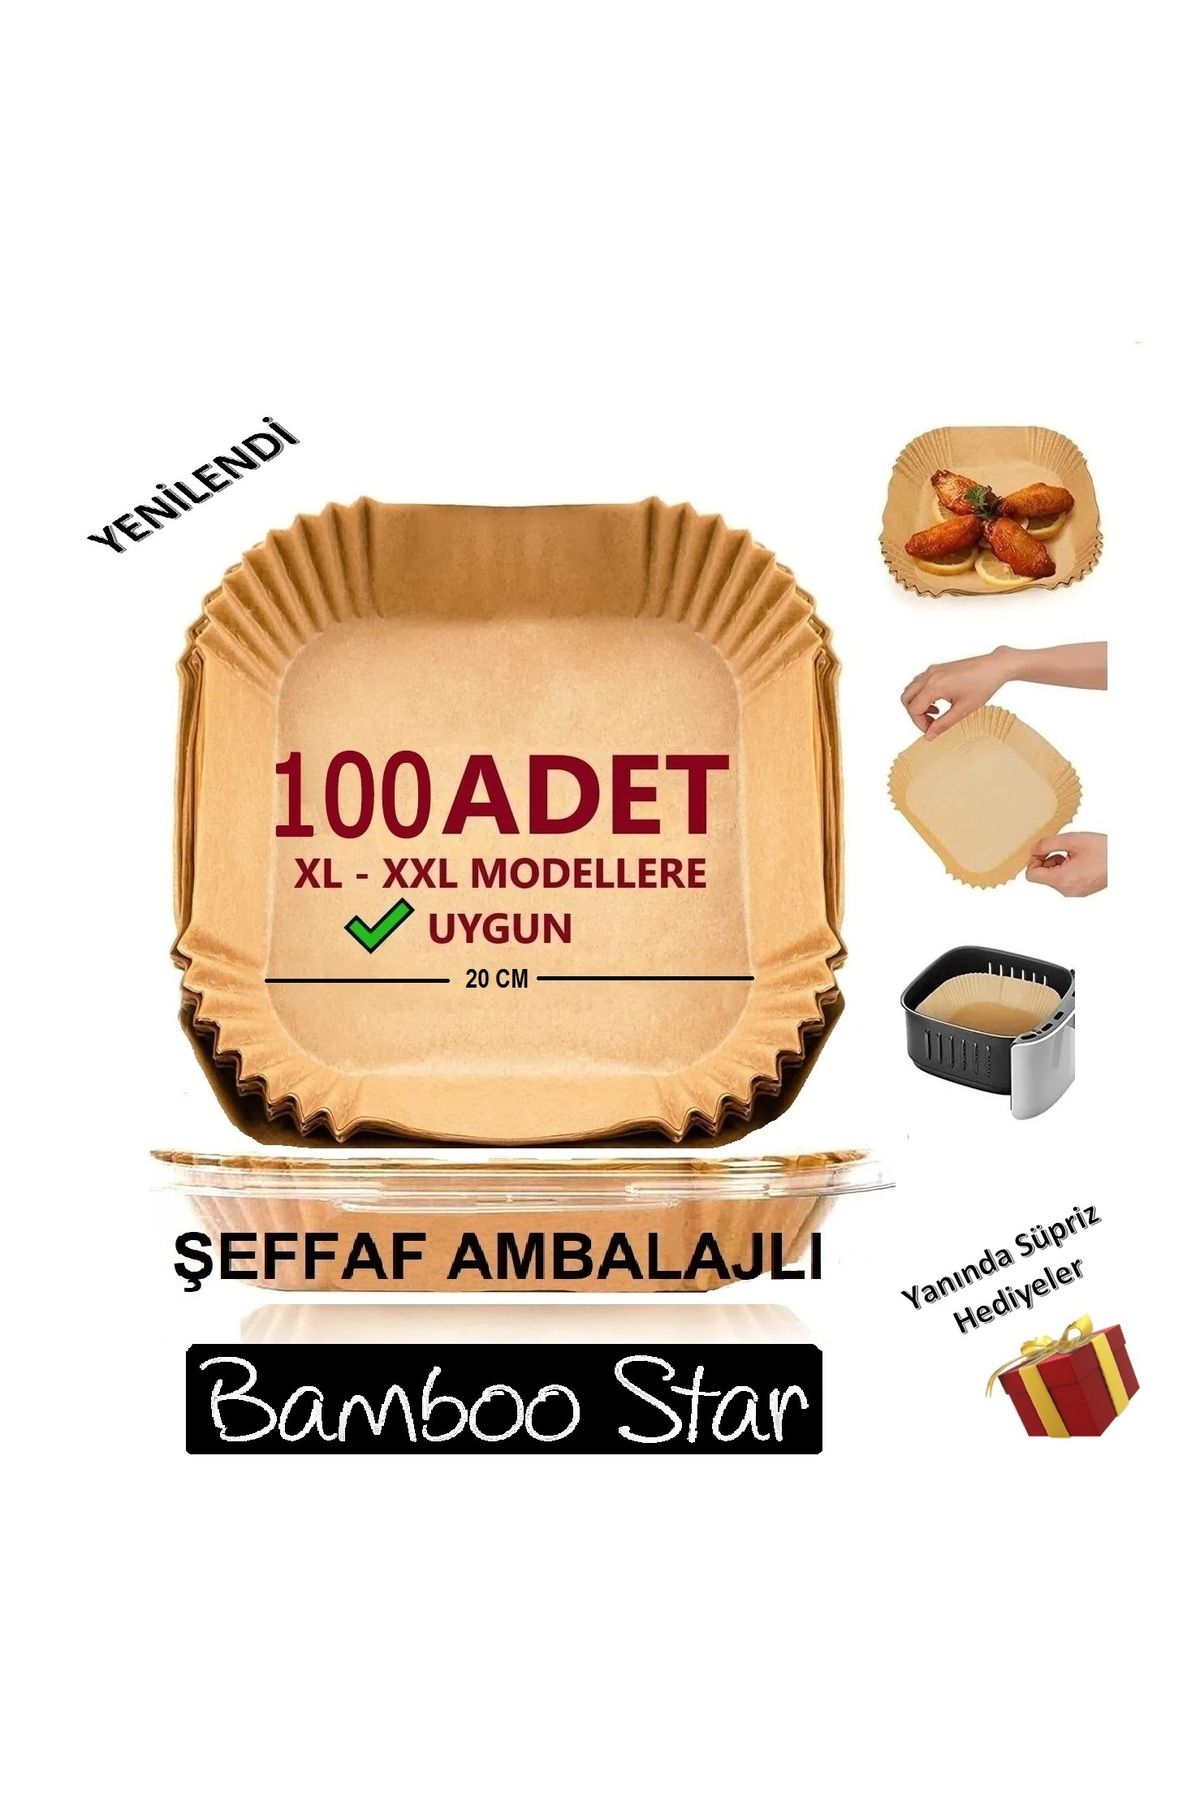 bamboo star Airfryer Pişirme Kağıdı Xl-xxl-büyük Boy,100 Adet Hava Fritöz Kağıdı, Fırın Kağıdı Tek Kullanım 20cm